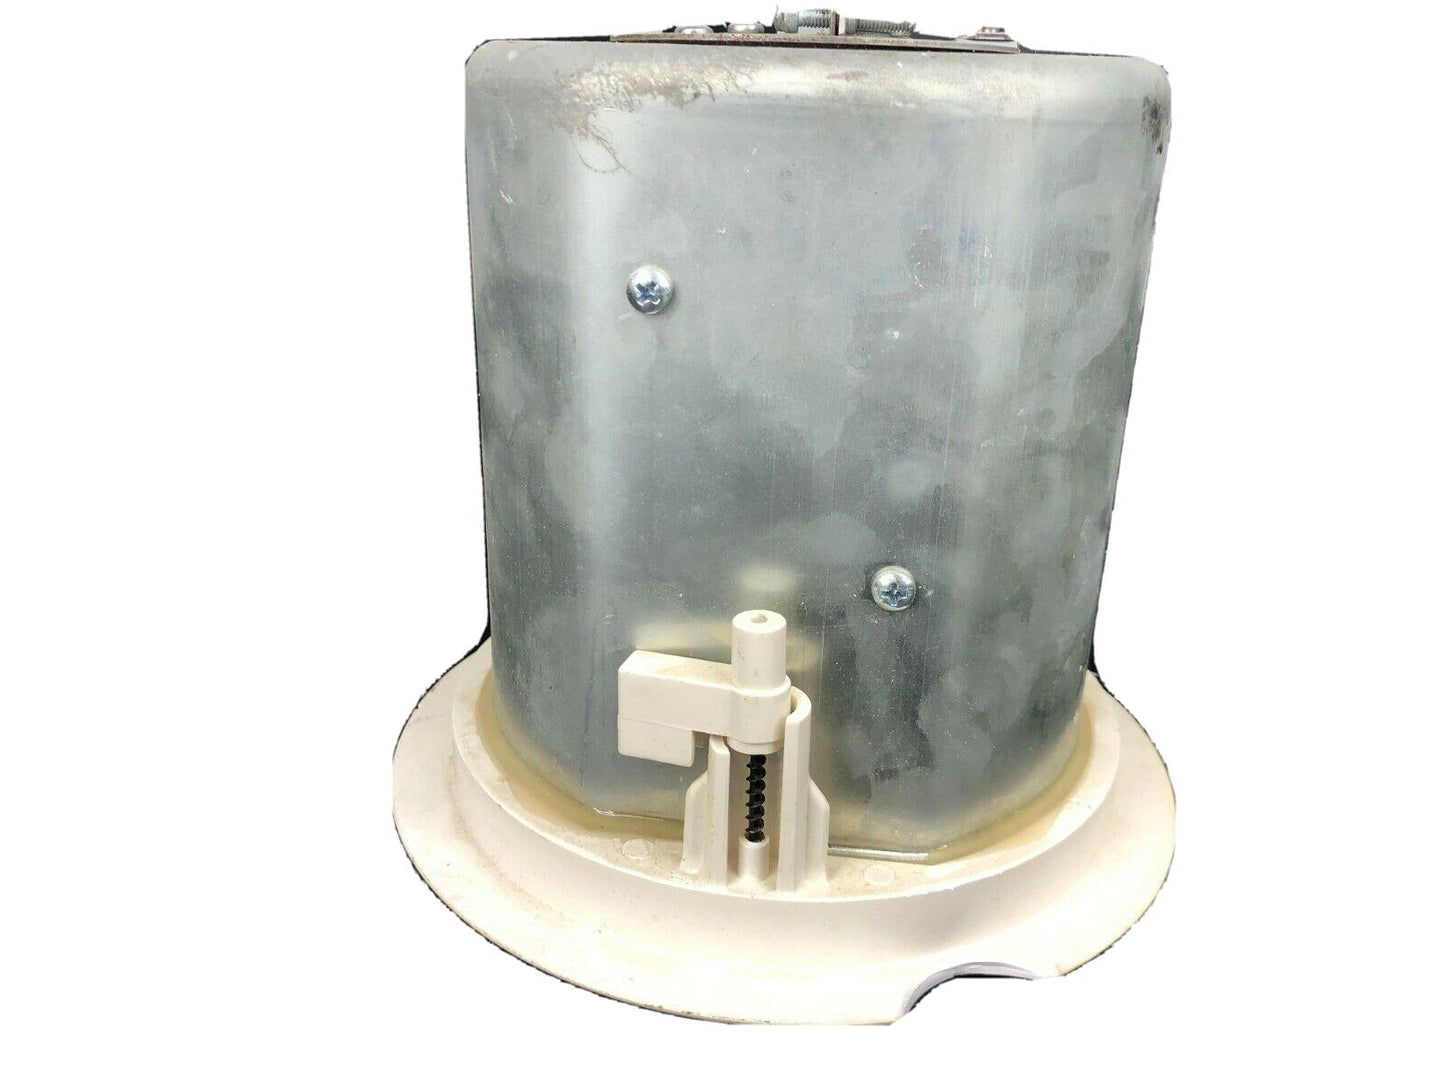 JBL Professional Model Control 24CT Ceiling Loudspeaker 70.7V or 100V